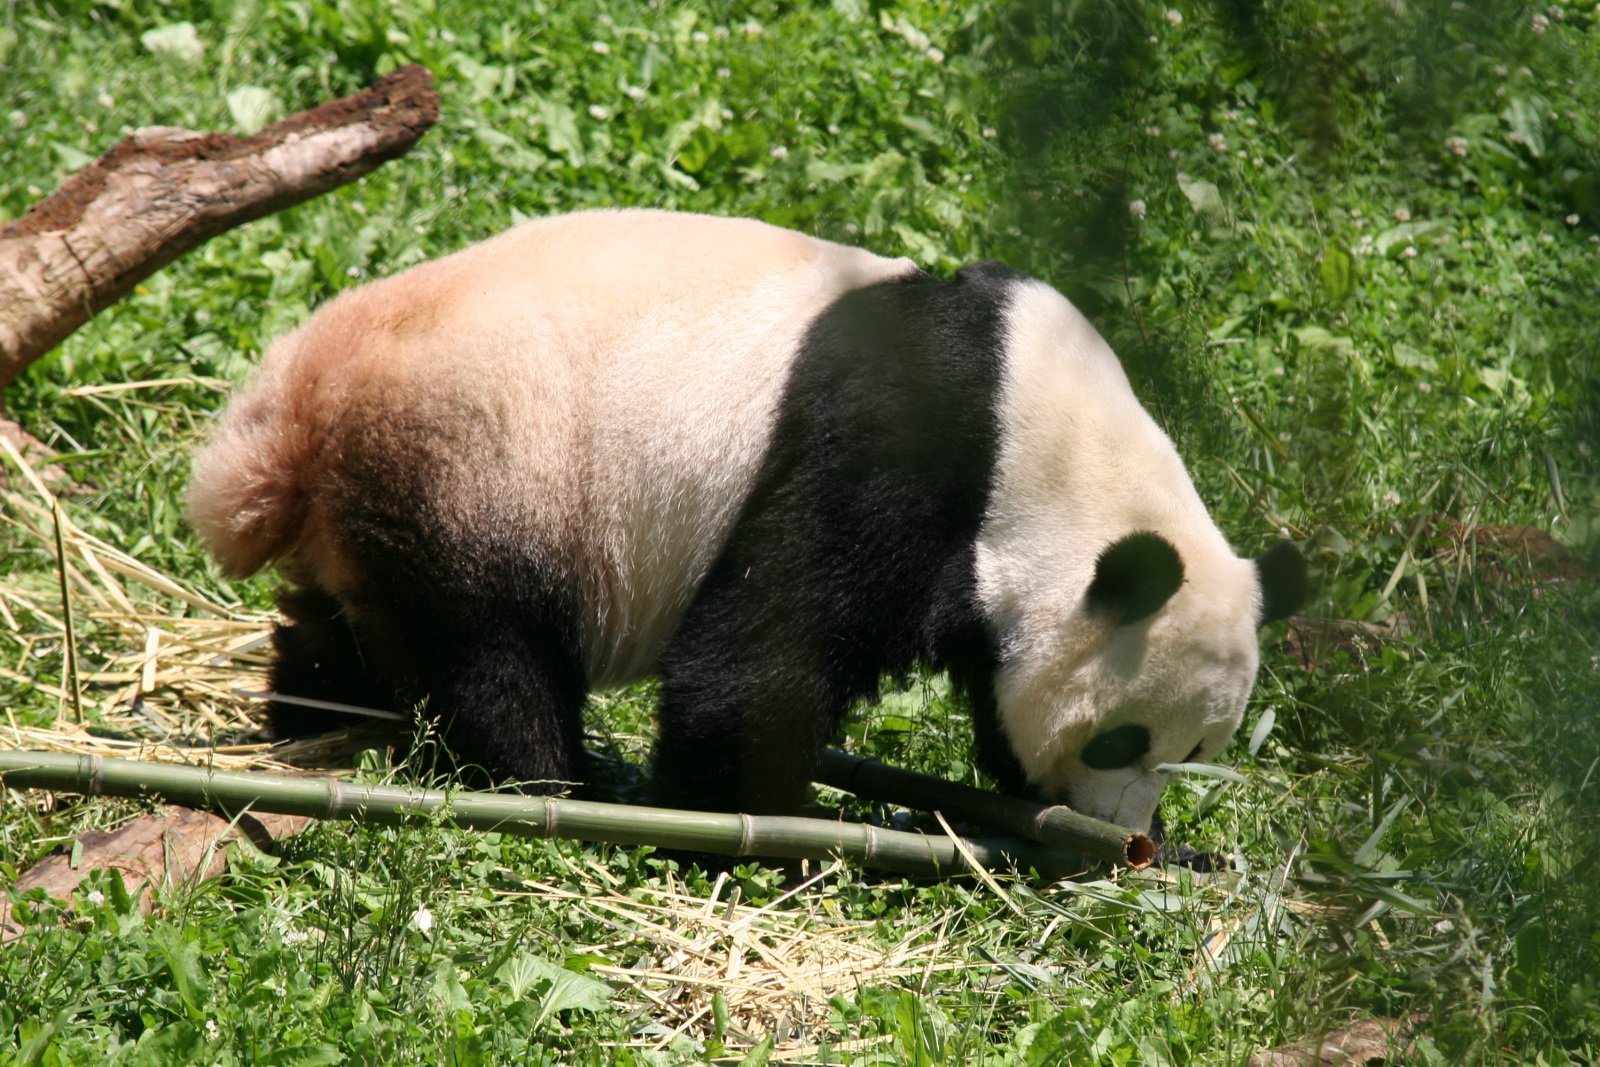 Прода ев. Большая Панда (Ailuropoda melanoleuca).. У панды есть хвост.